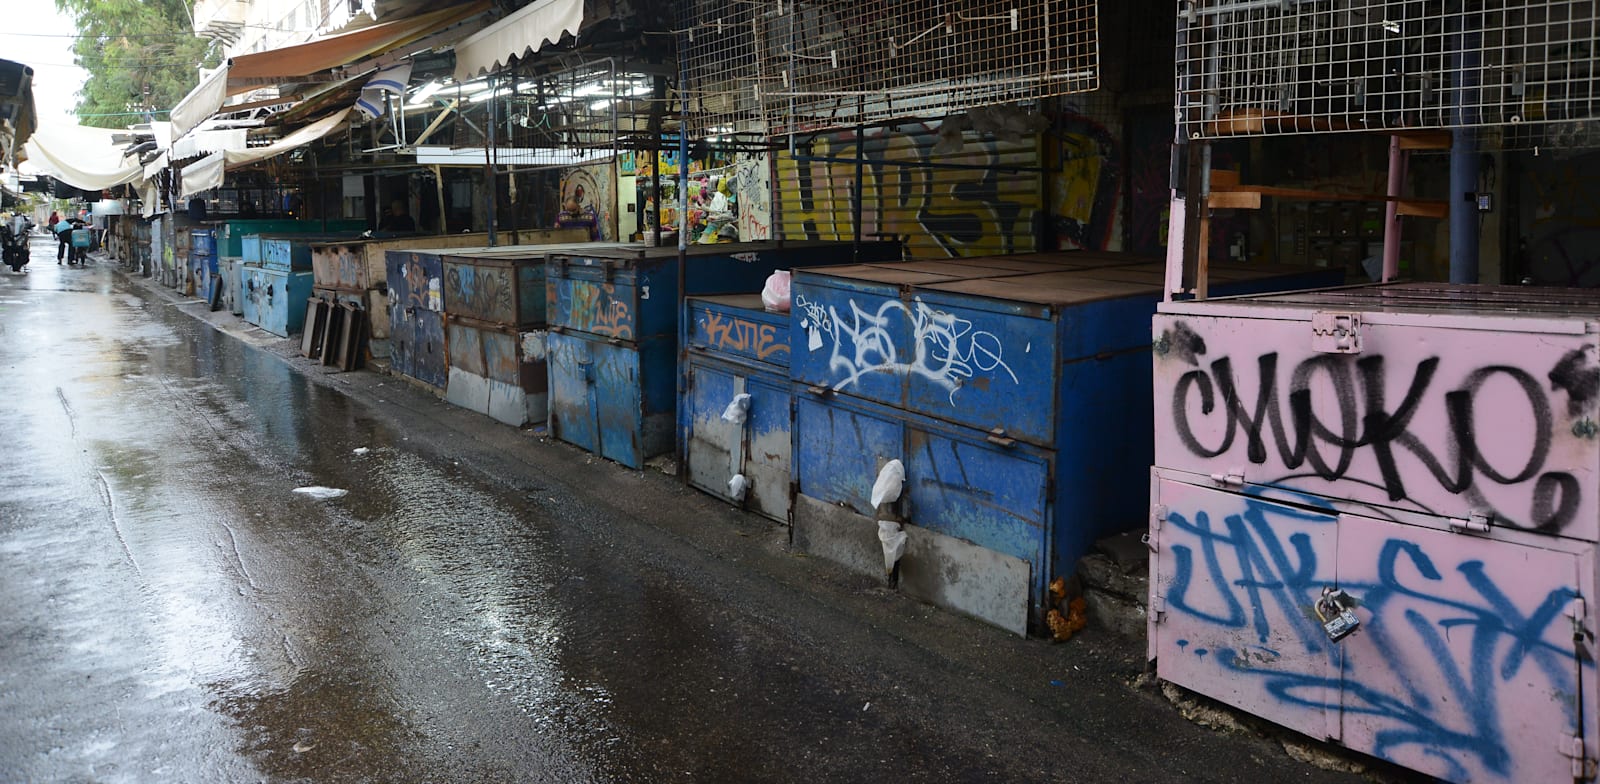 שוק הכרמל בתל אביב, באחד הסגרים הקודמים / צילום: איל יצהר